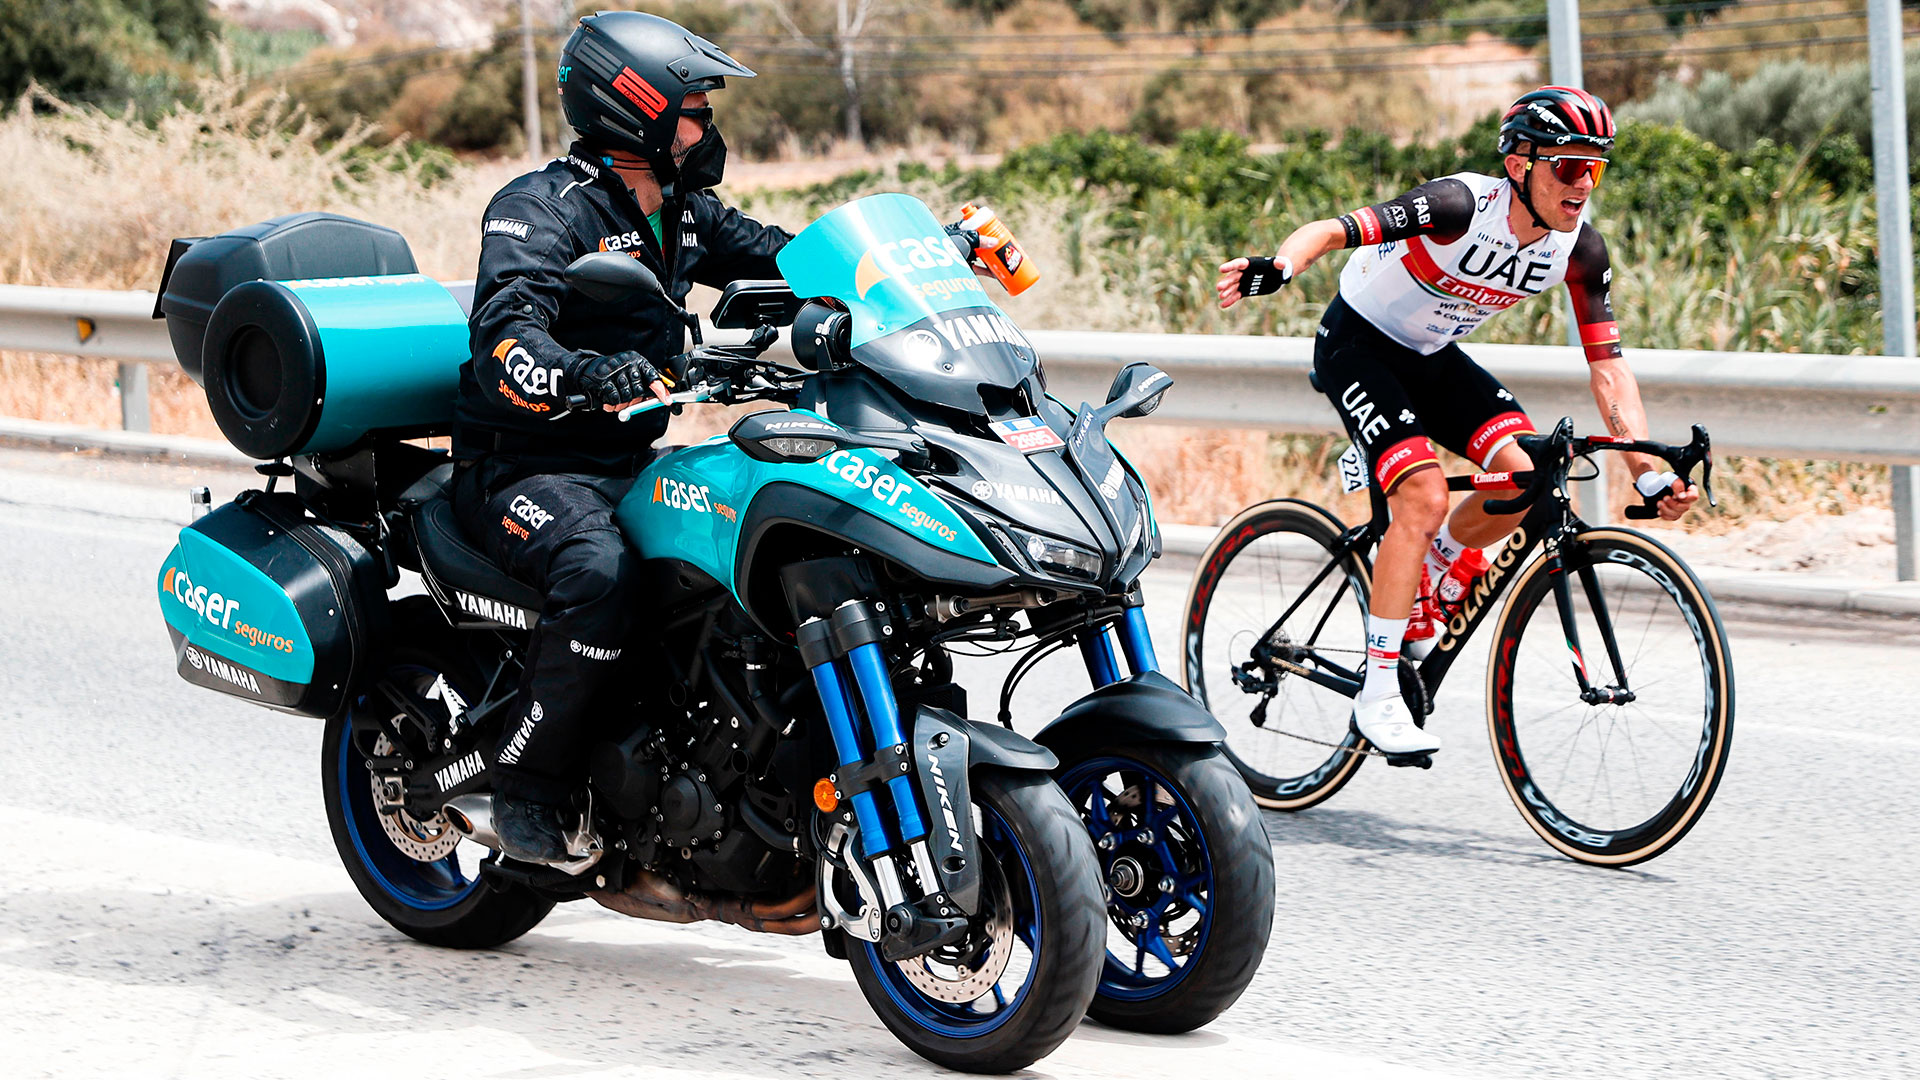 La Vuelta cierra la temporada de las grandes competiciones ciclistas y sigue confiando en la Yamaha Niken